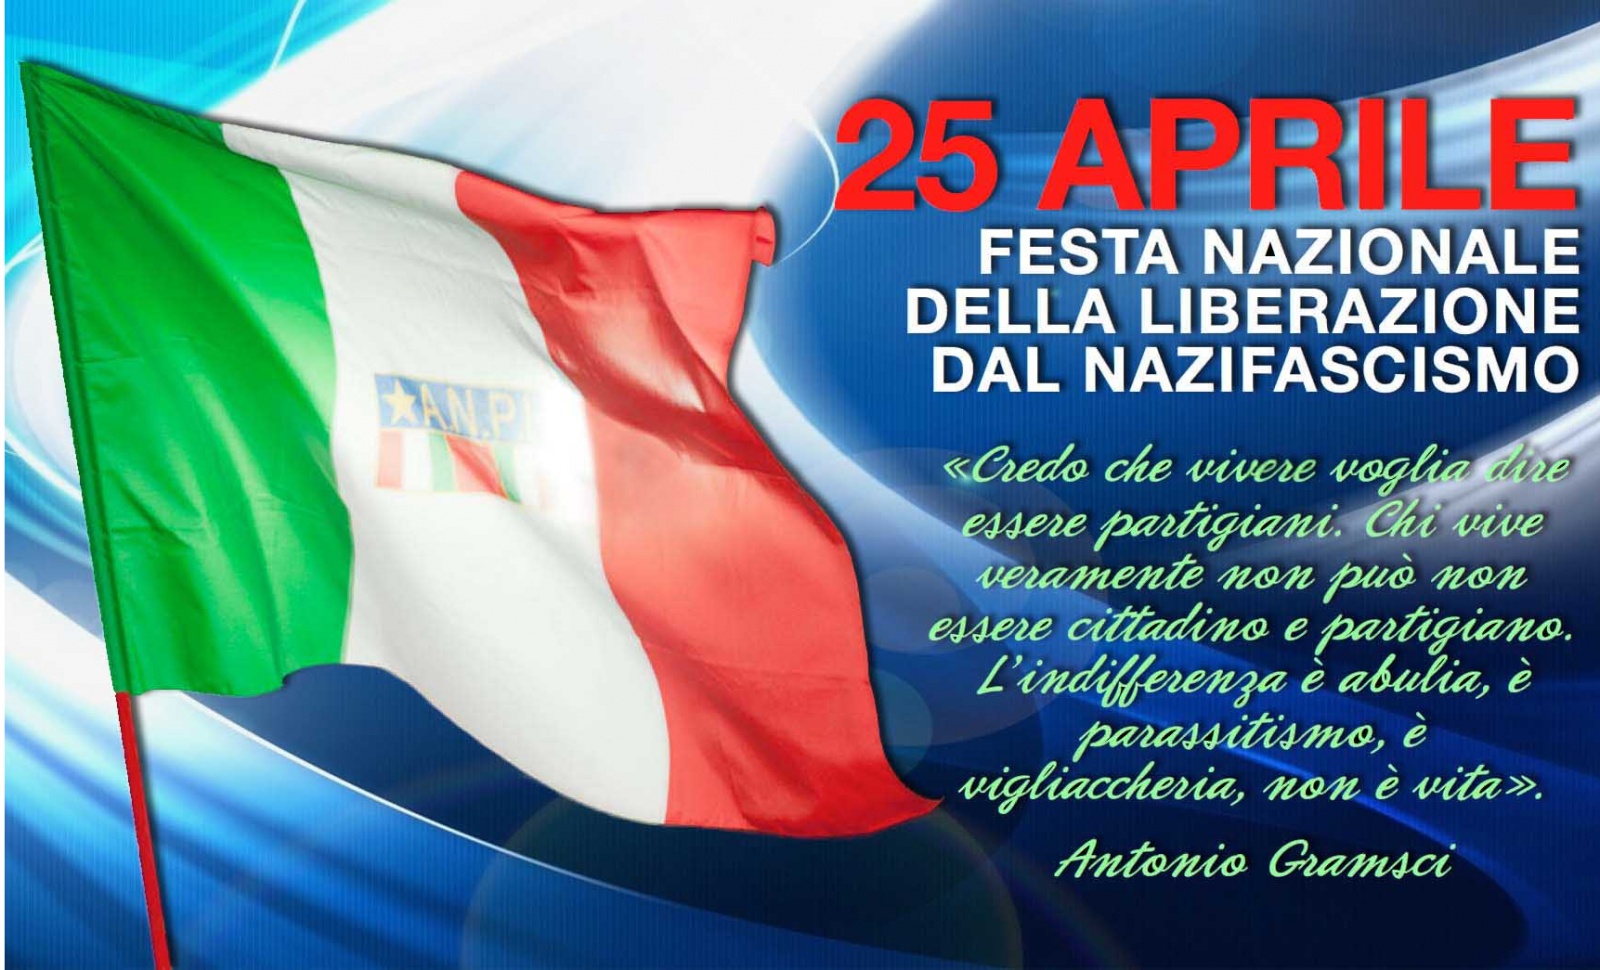 25 апреля есть праздник. 25 Aprile. 25 Апреля праздник в Италии. Открытка к festa della Liberazione. День независимости в Италии 25 апреля.